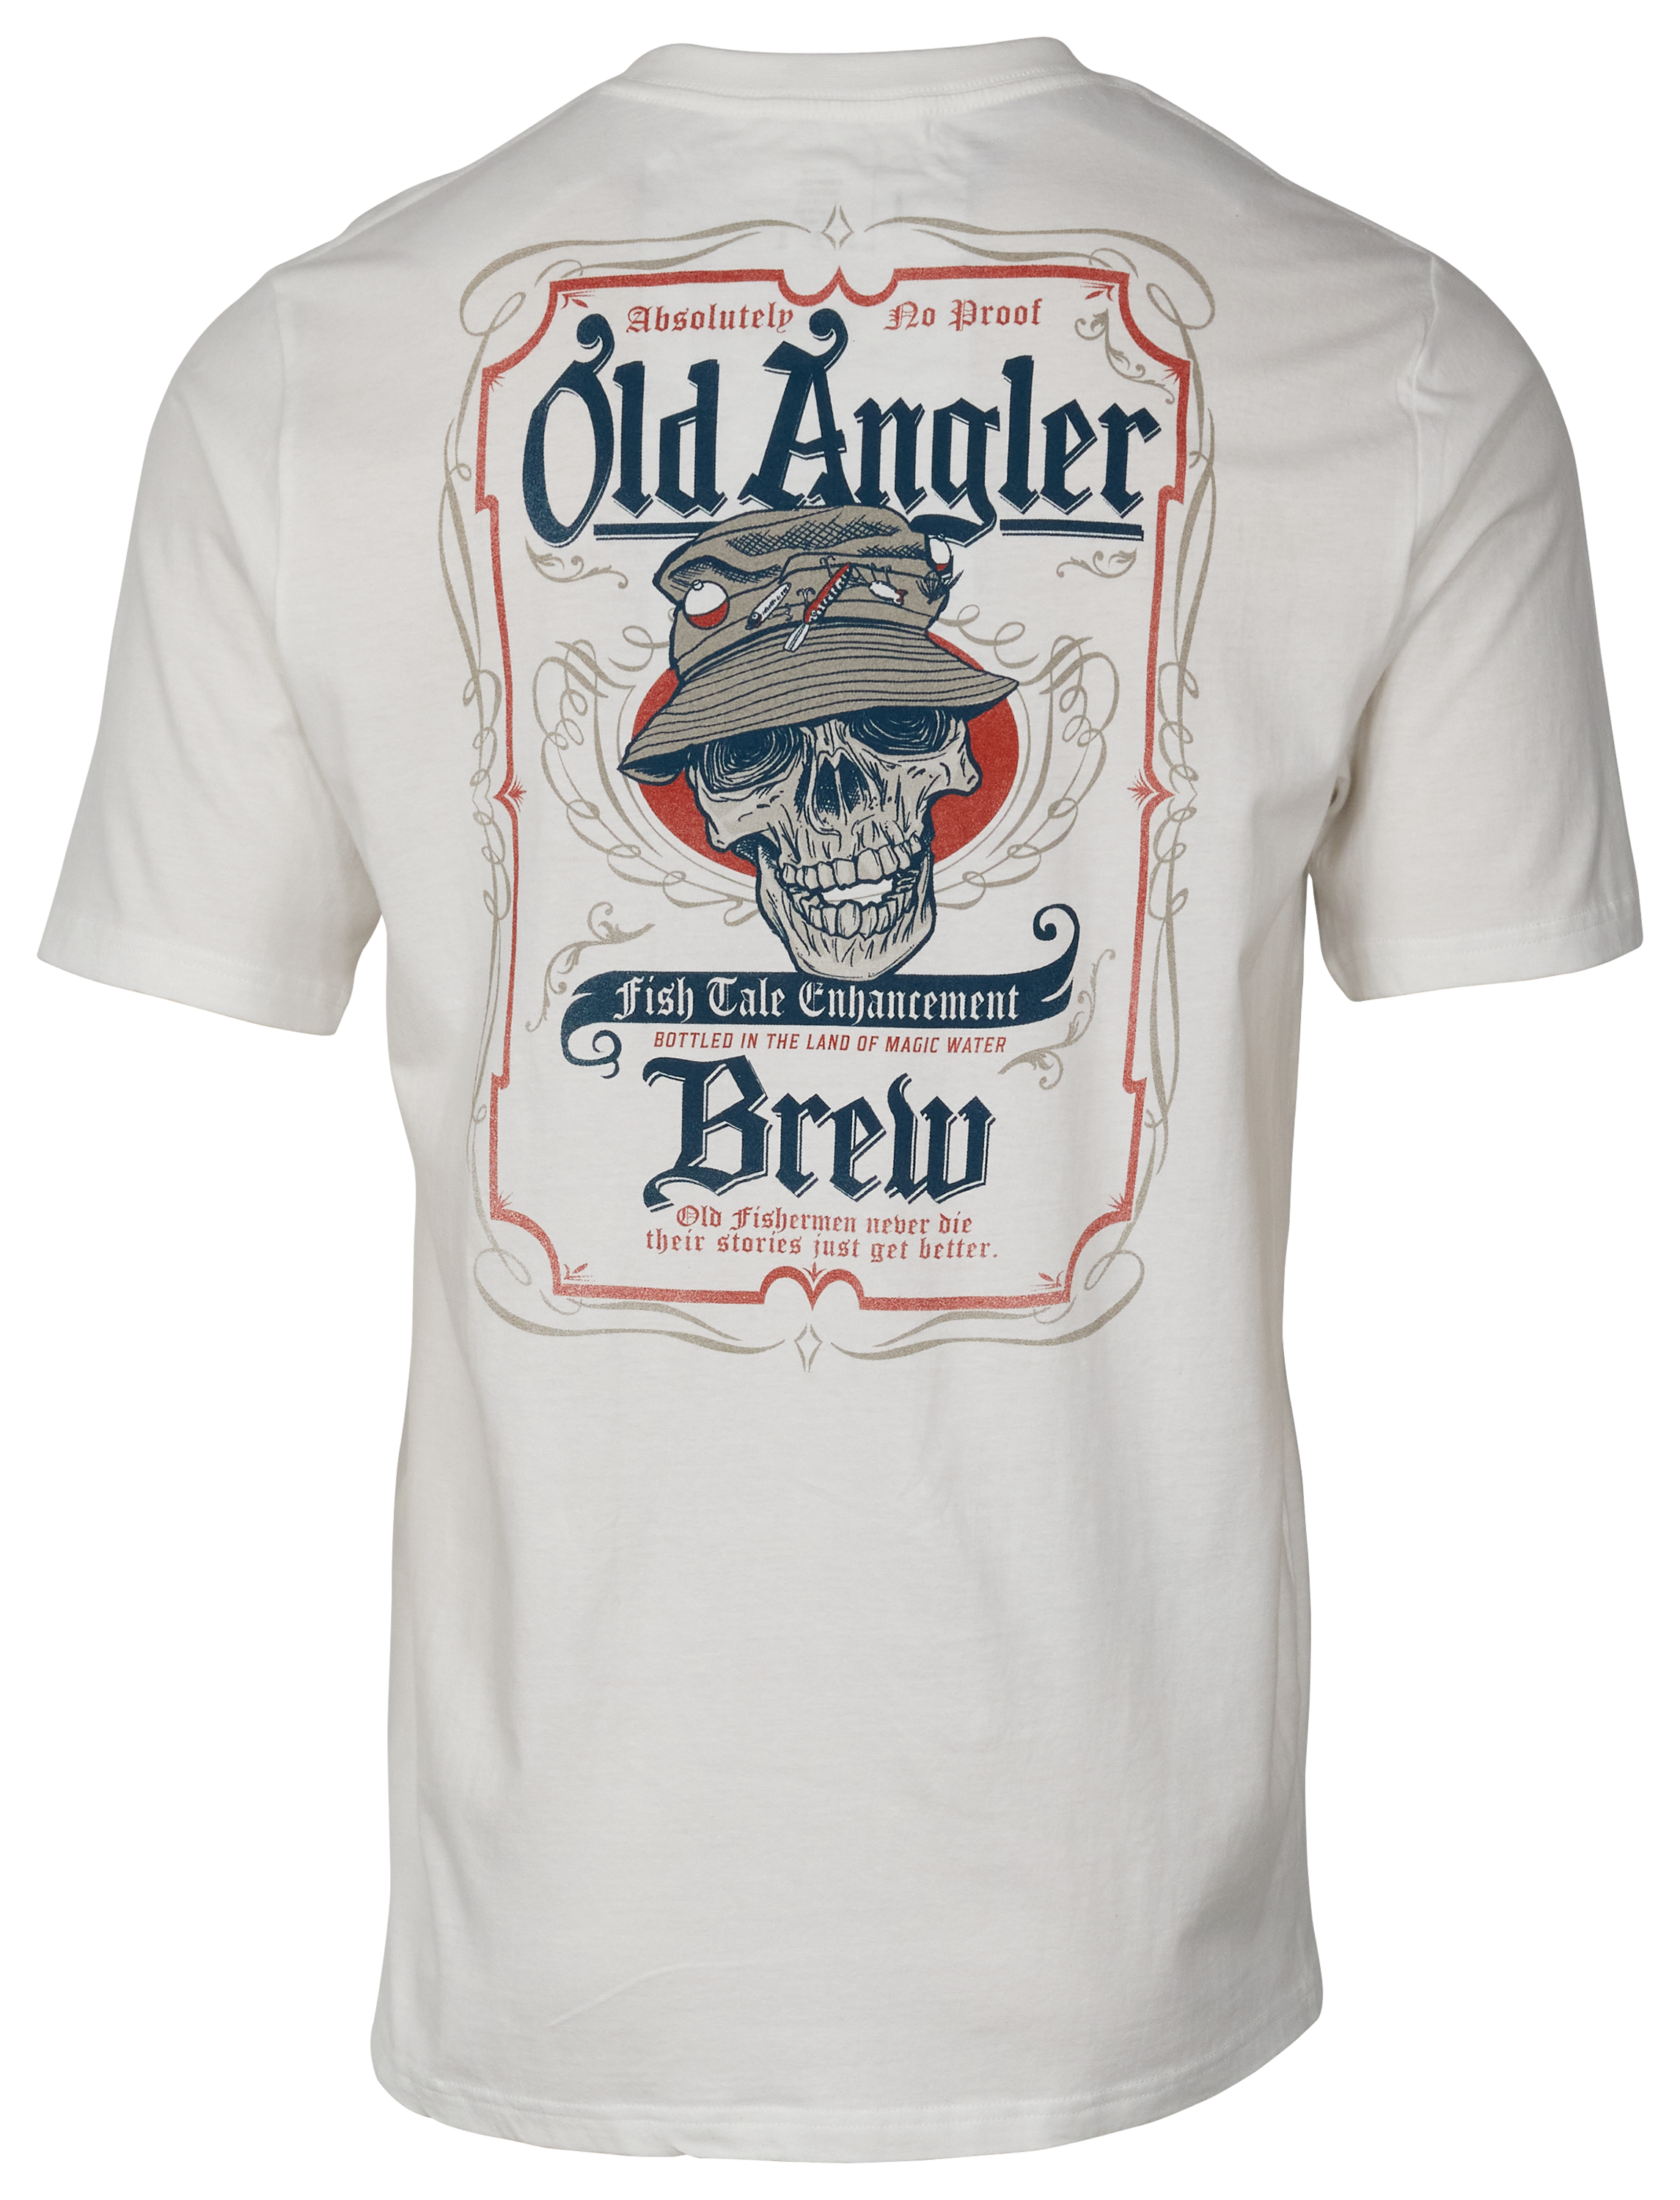 Bass Pro Shops Old Angler Short-Sleeve T-Shirt for Men - White - 3XL